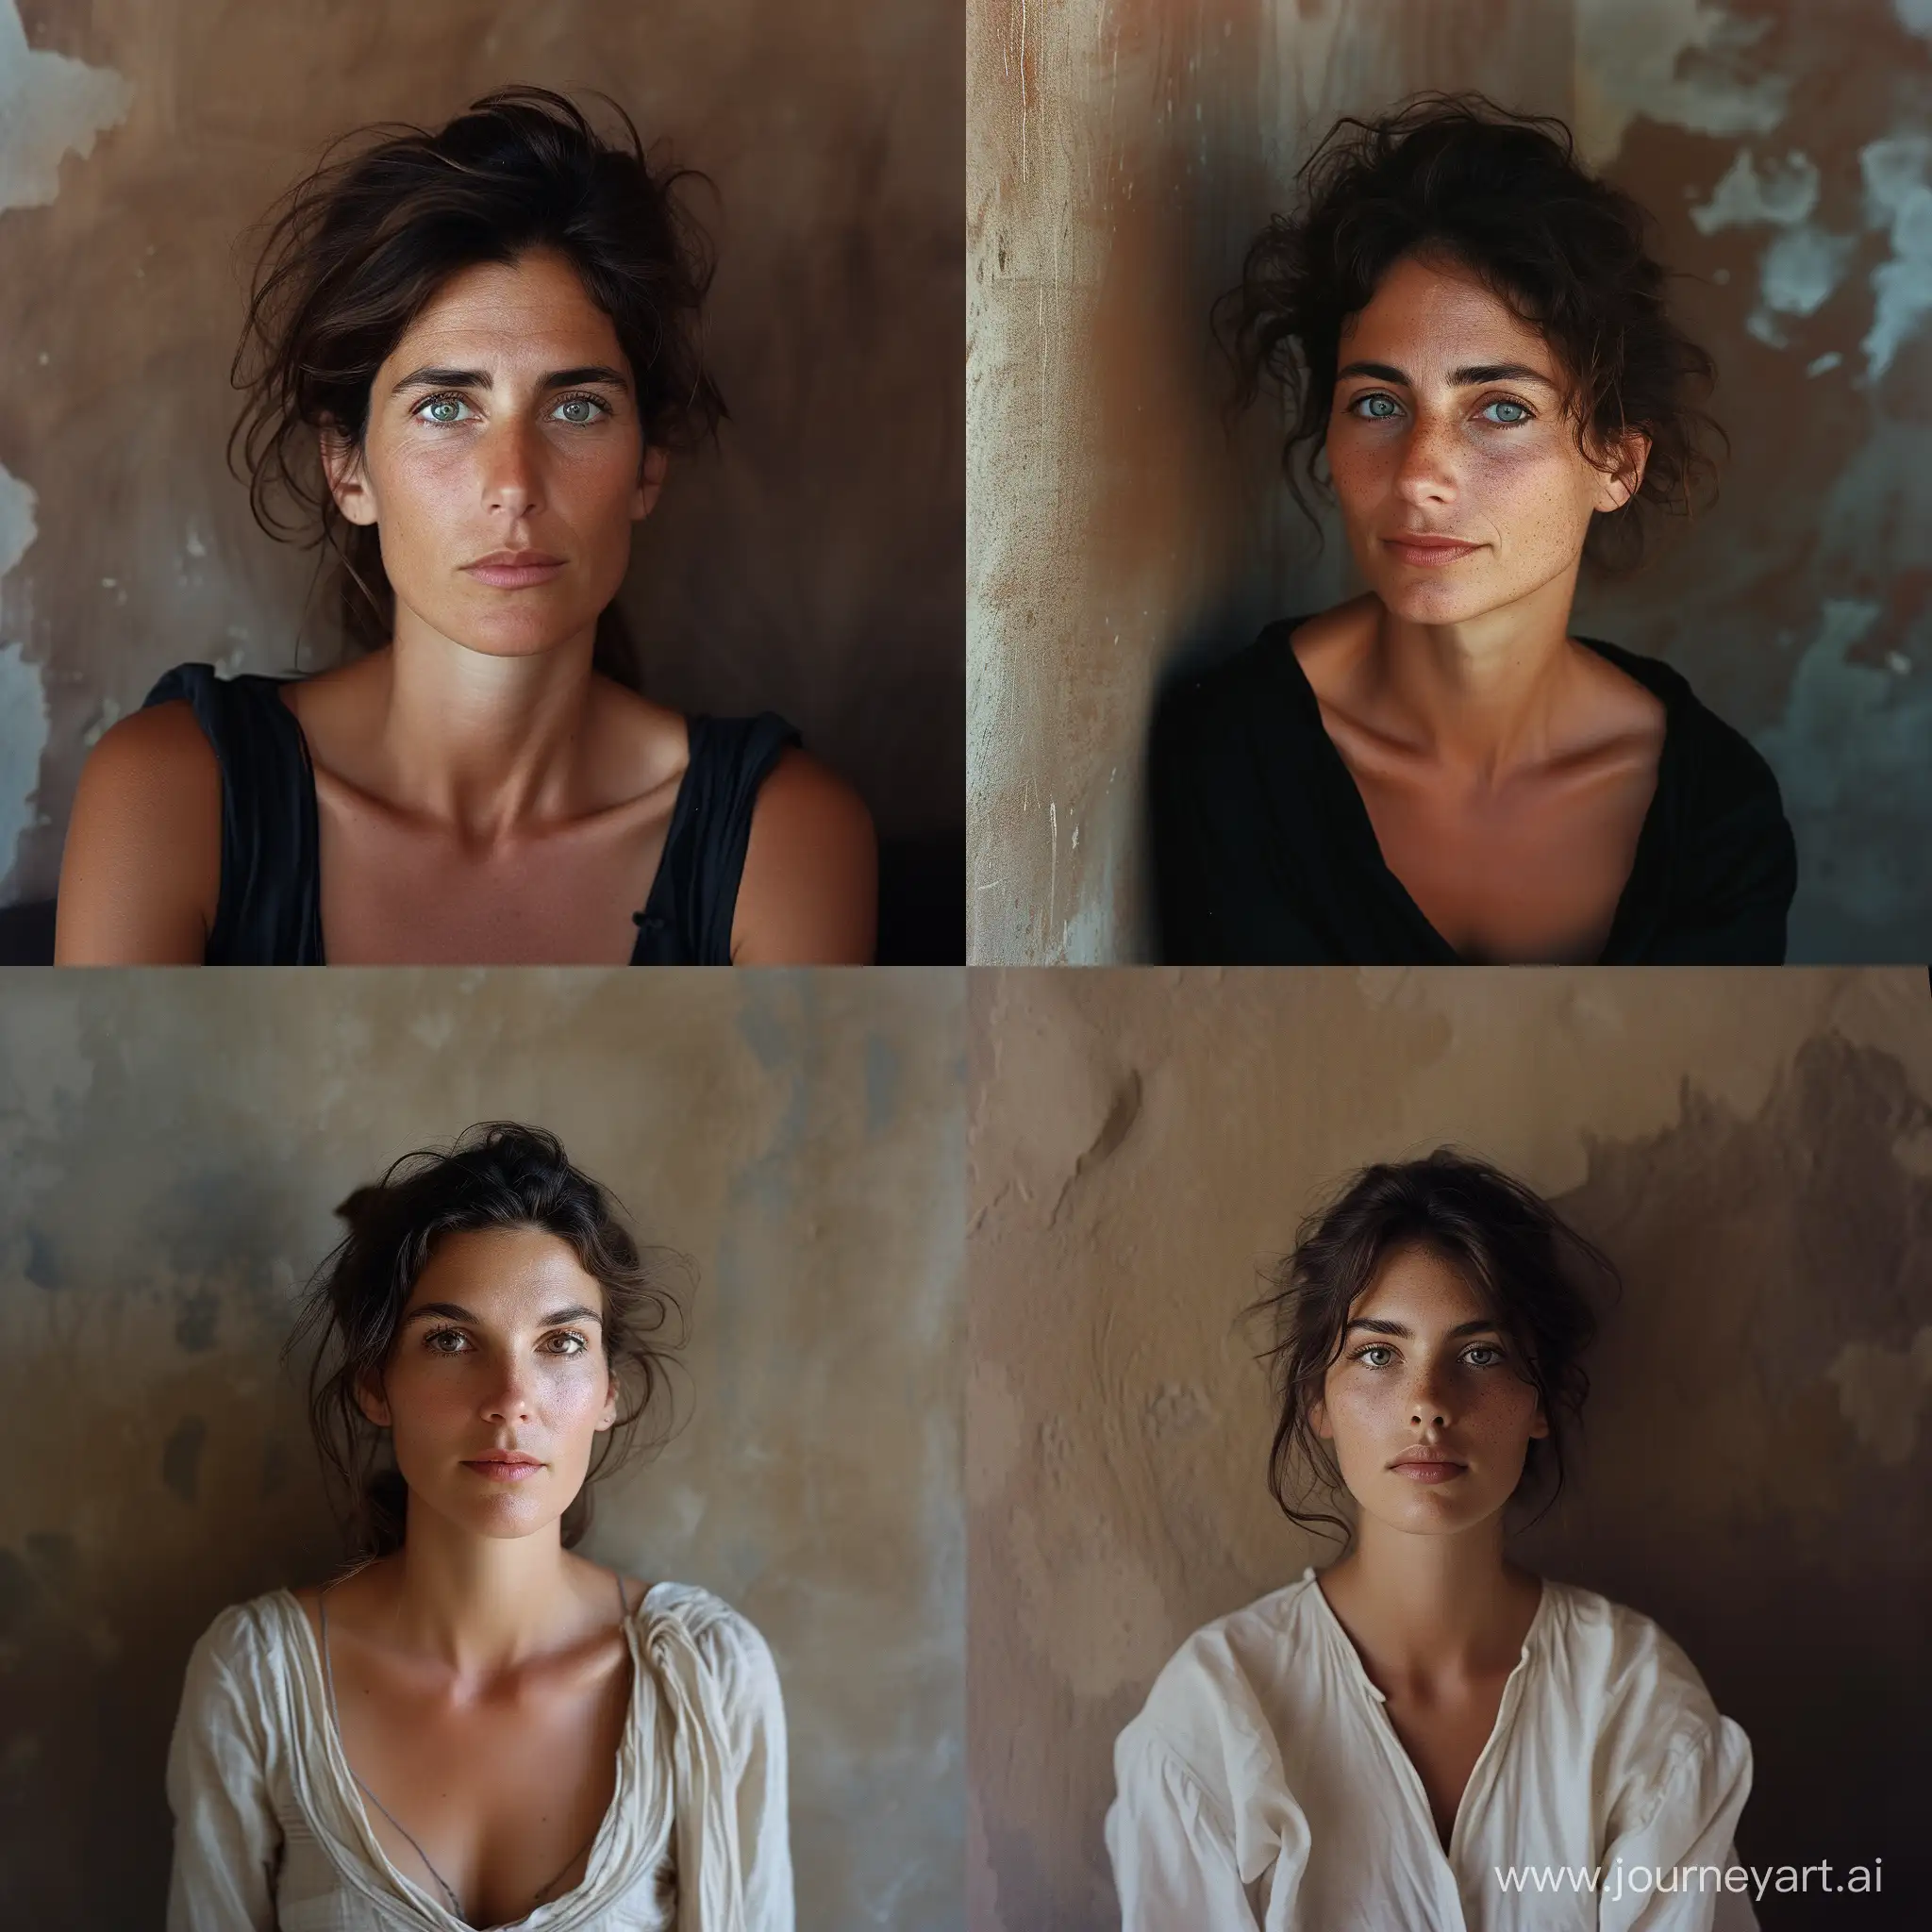 Tranquil-Italian-Woman-40YearOld-Portrait-in-Warm-Summer-Light